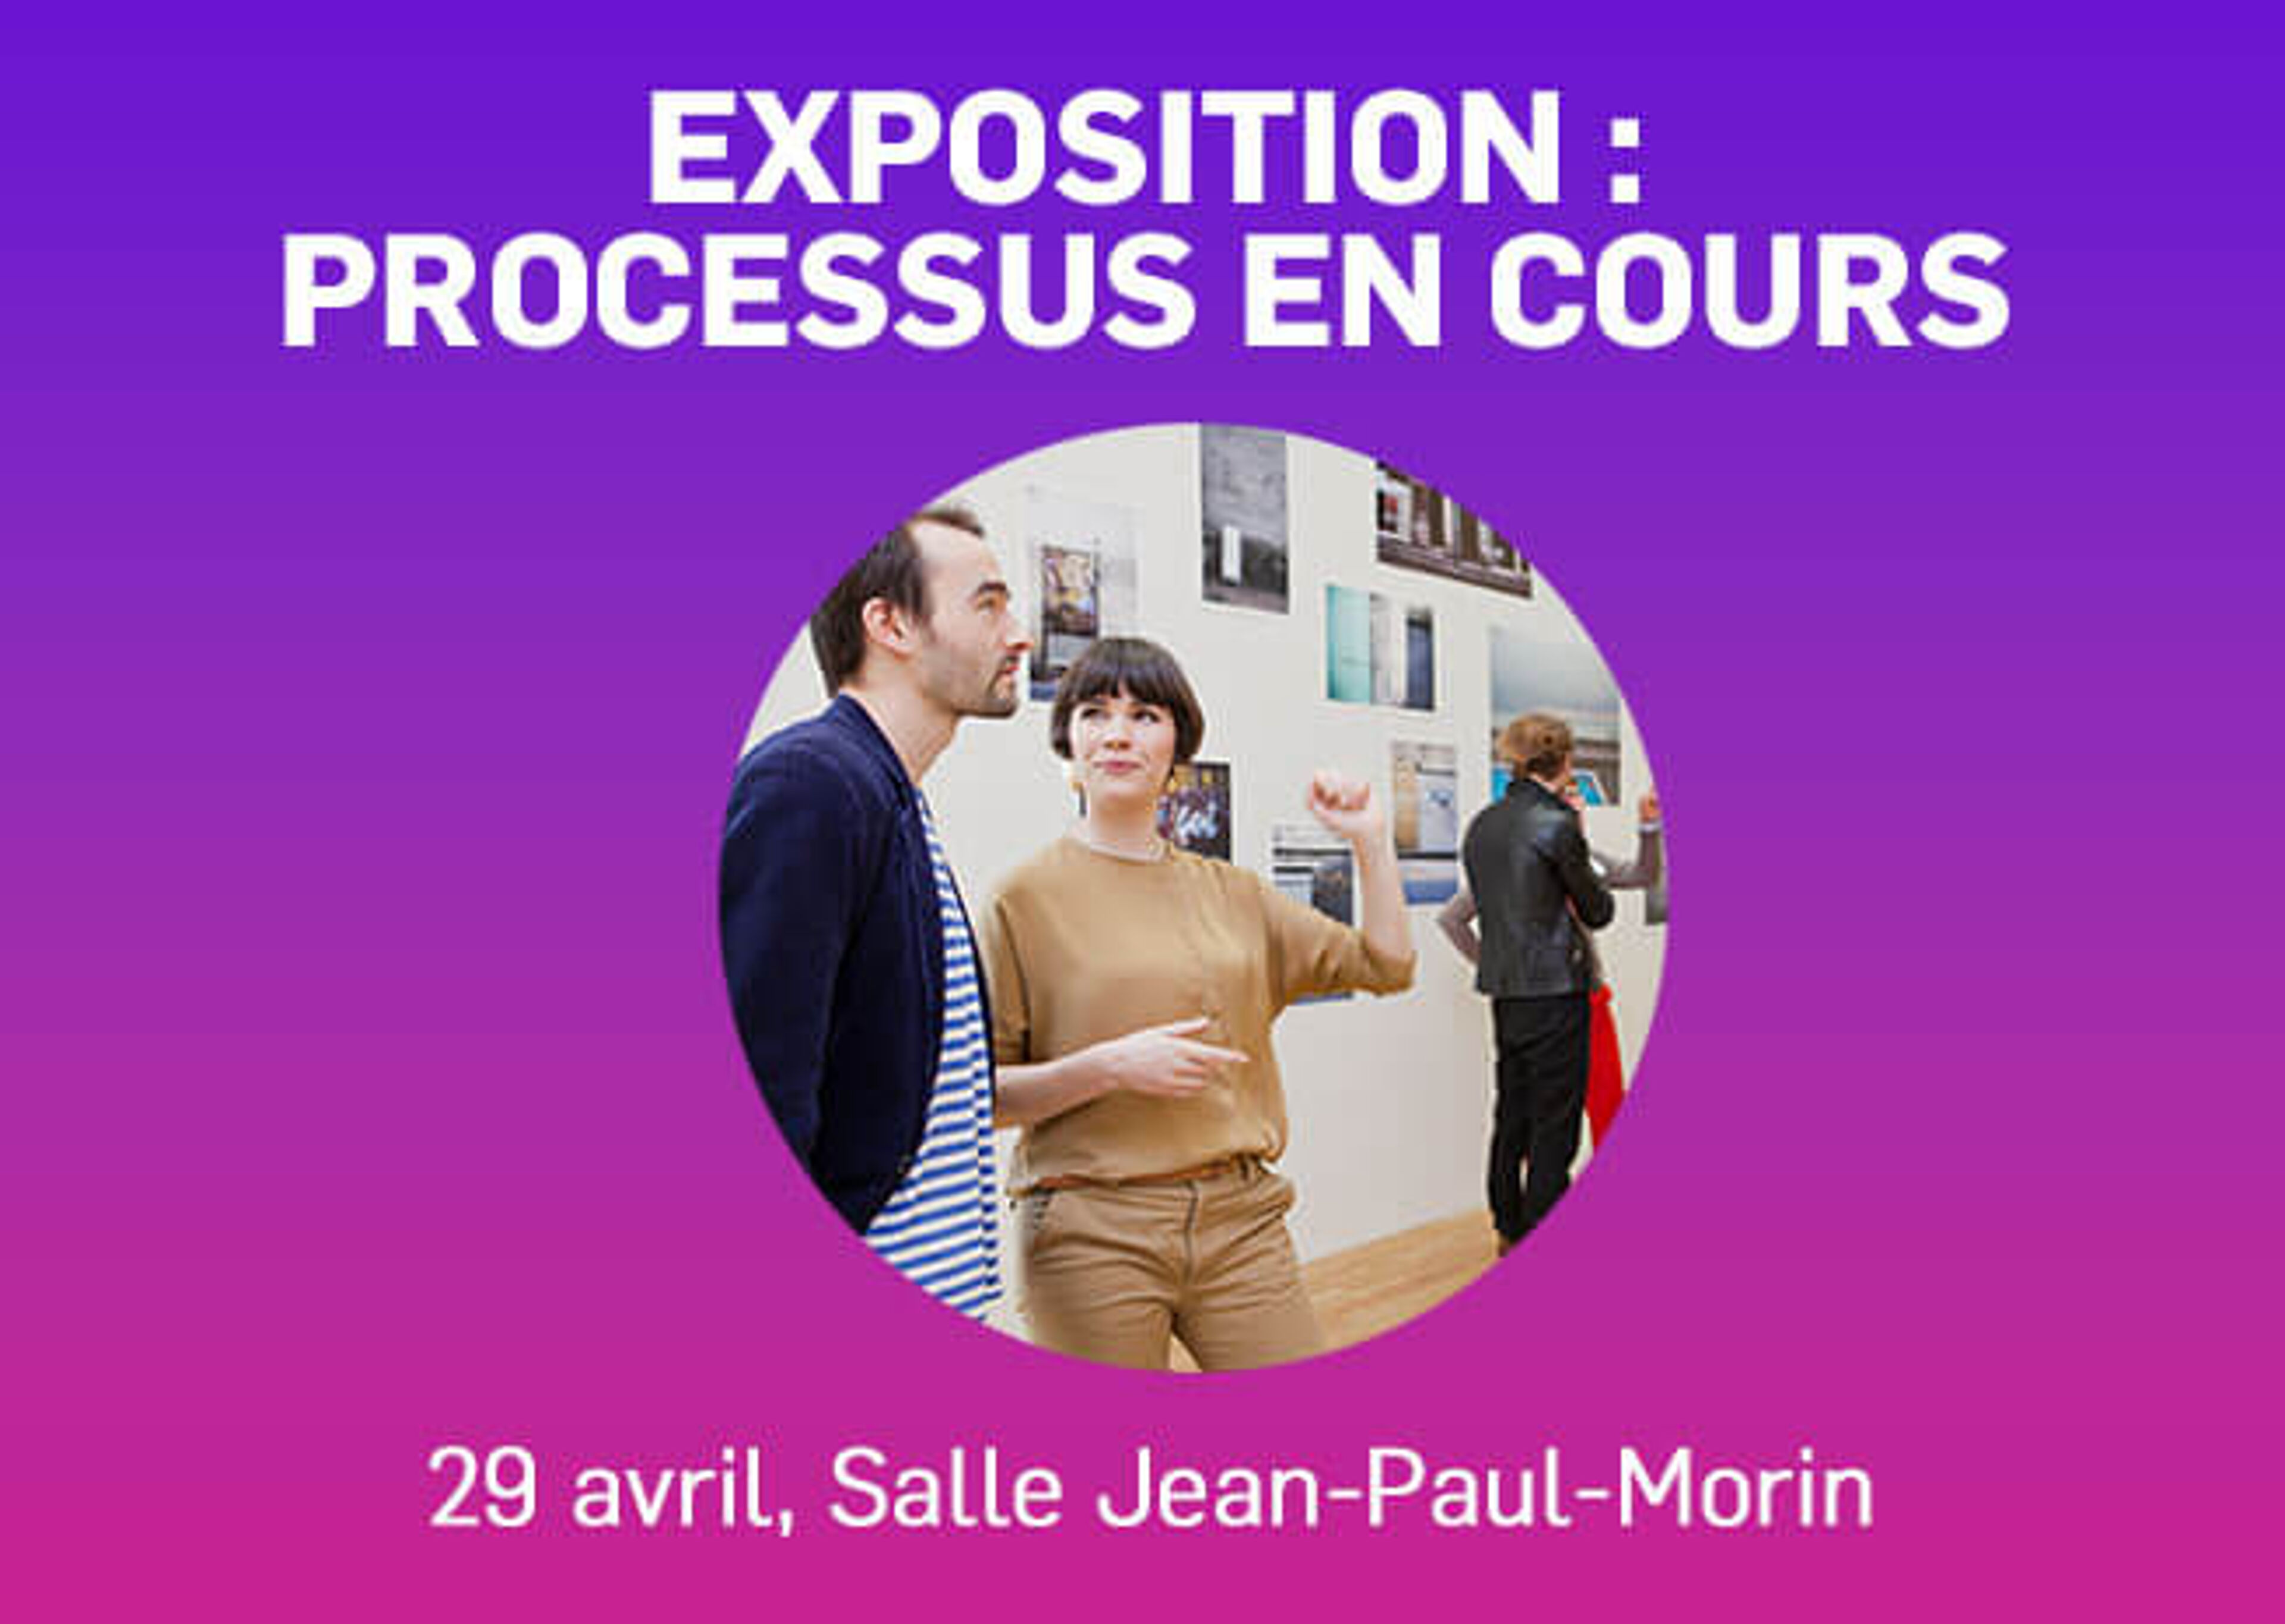 Deux visiteurs interagissent avec une exposition photographique intitulée "Traitement du processus" le 29 avril à la Salle Jean-Paul-Morin.